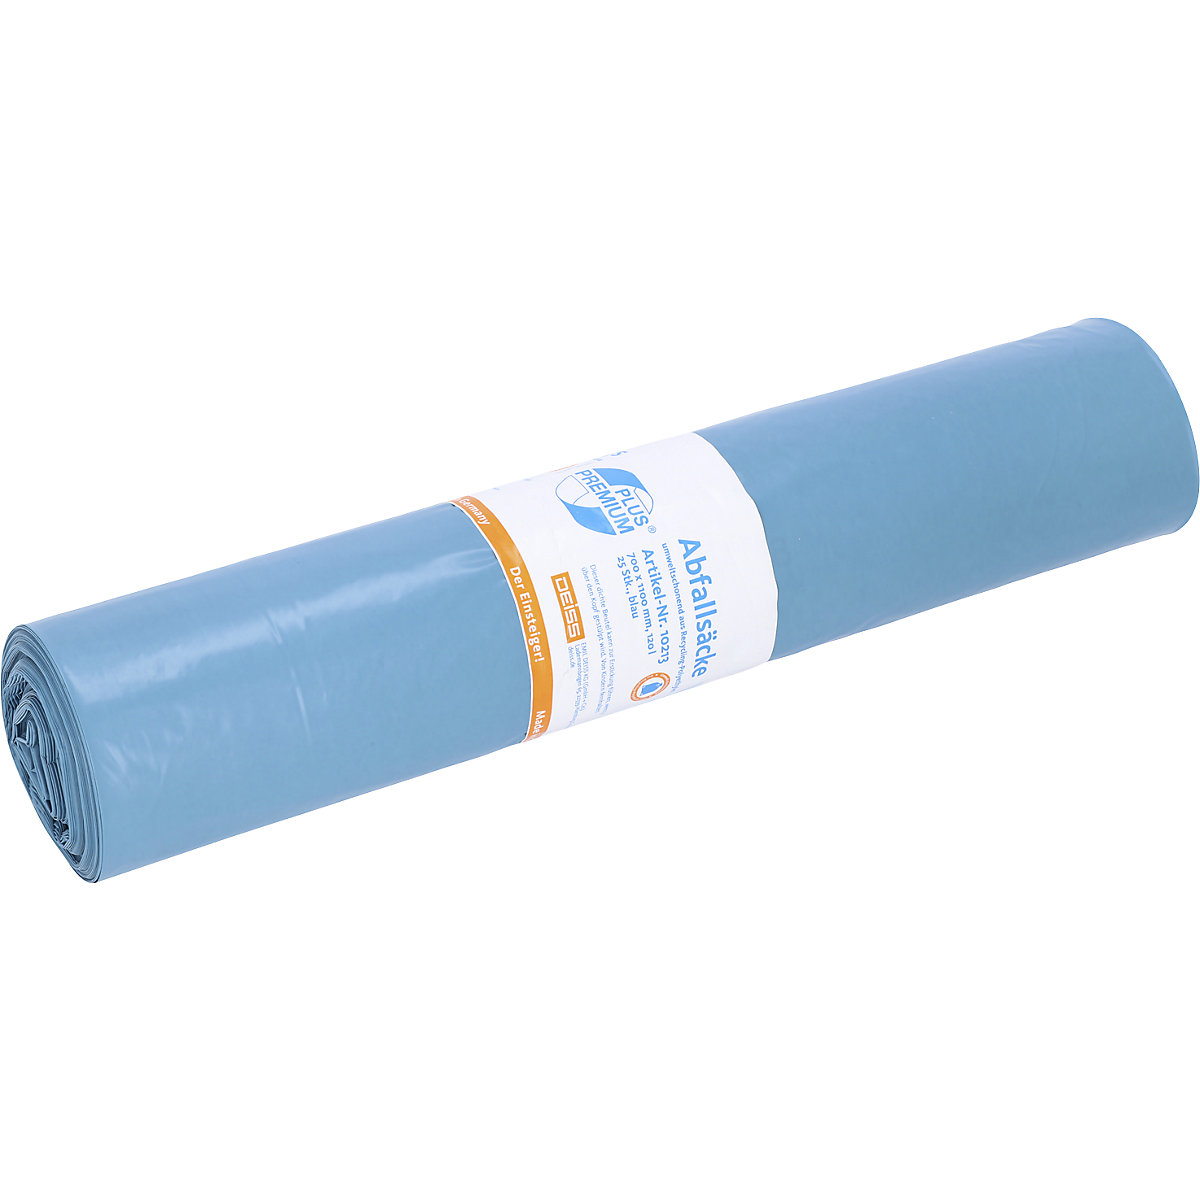 Sacs-poubelle PREMIUM PLUS, 120 l – Deiss, bleu, lot de 250, l x h 700 x 1100 mm, épaisseur matériau 31 µm